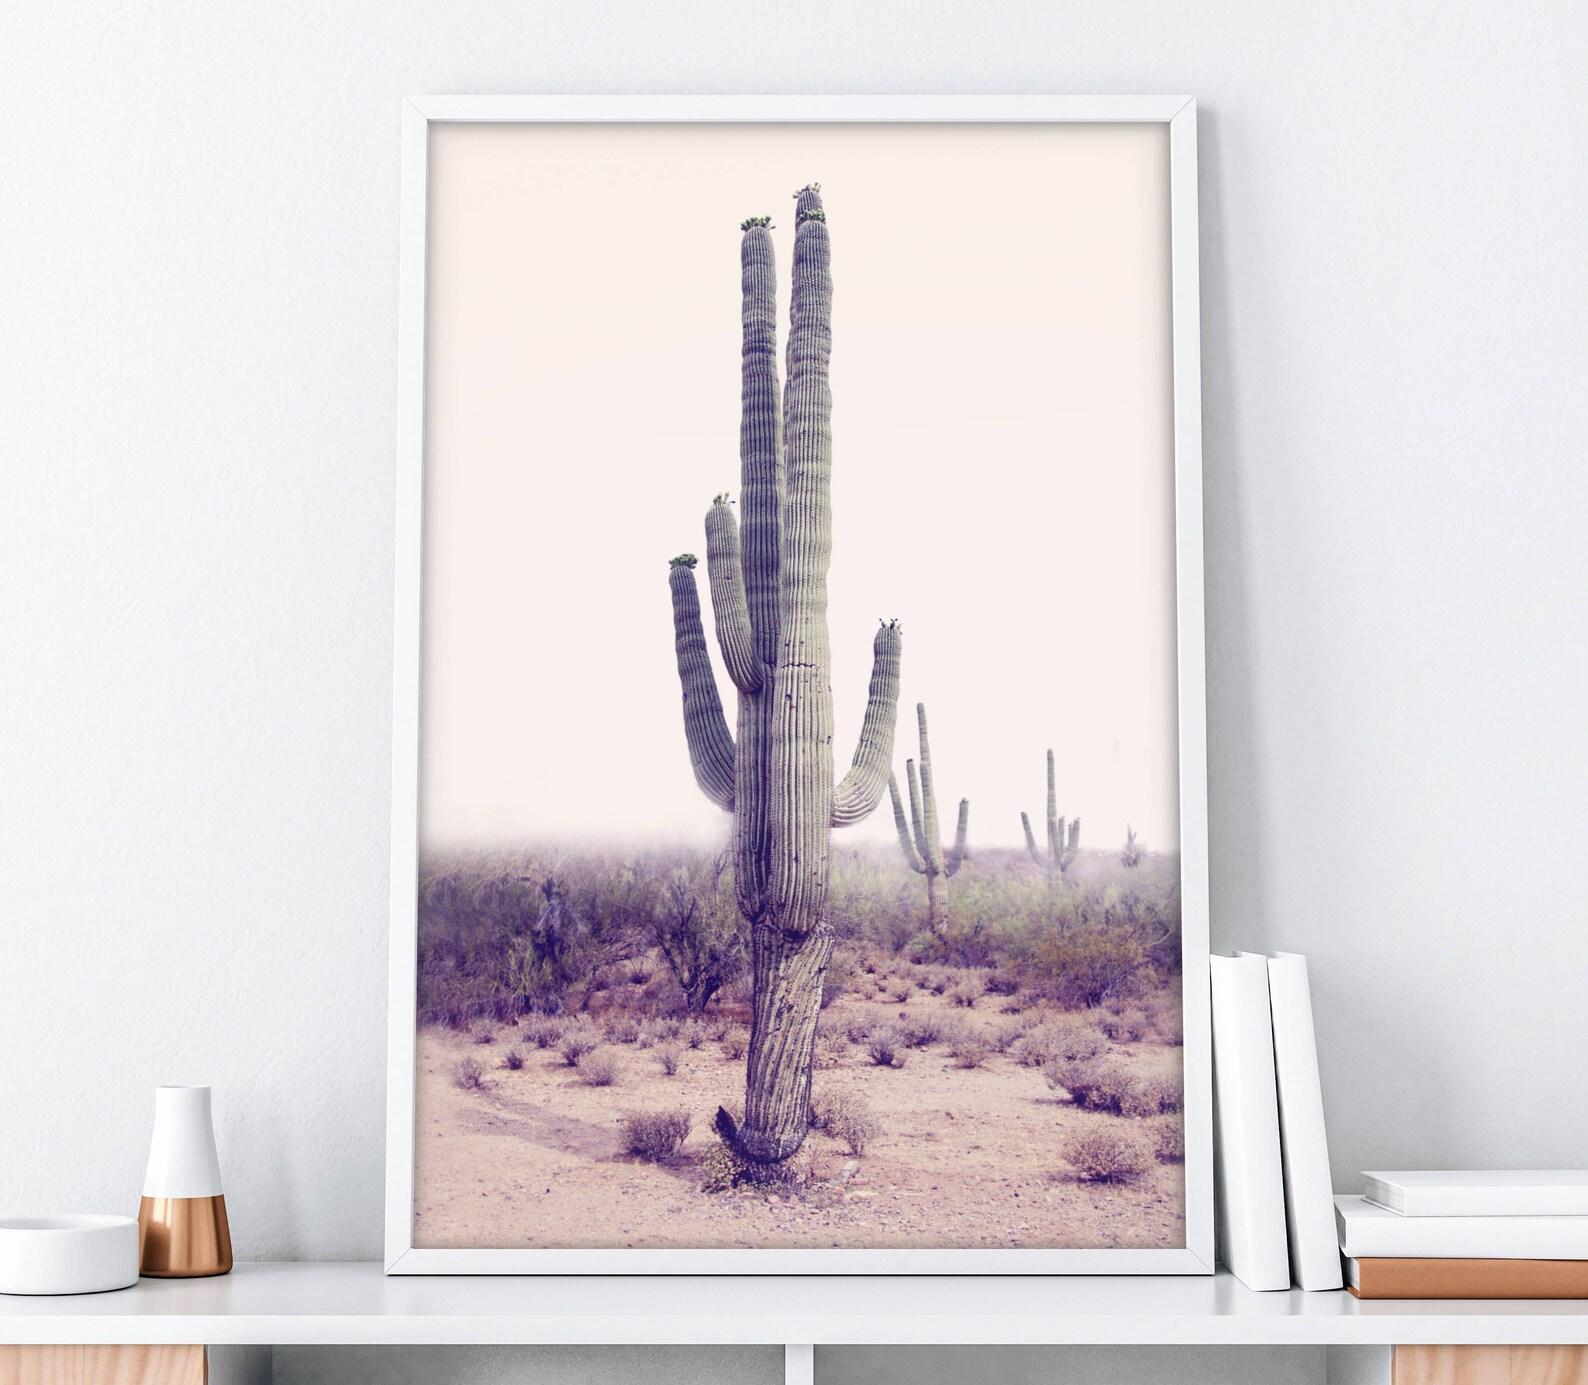 Triptyque de paysages désertiques doux en édition limitée (ensemble de 3 impressions sur toile de cactus) Imprimé sur toile de haute qualité et rehaussé de touches de texture de peinture. Livré roulé dans un tube d'expédition. Édition de 50